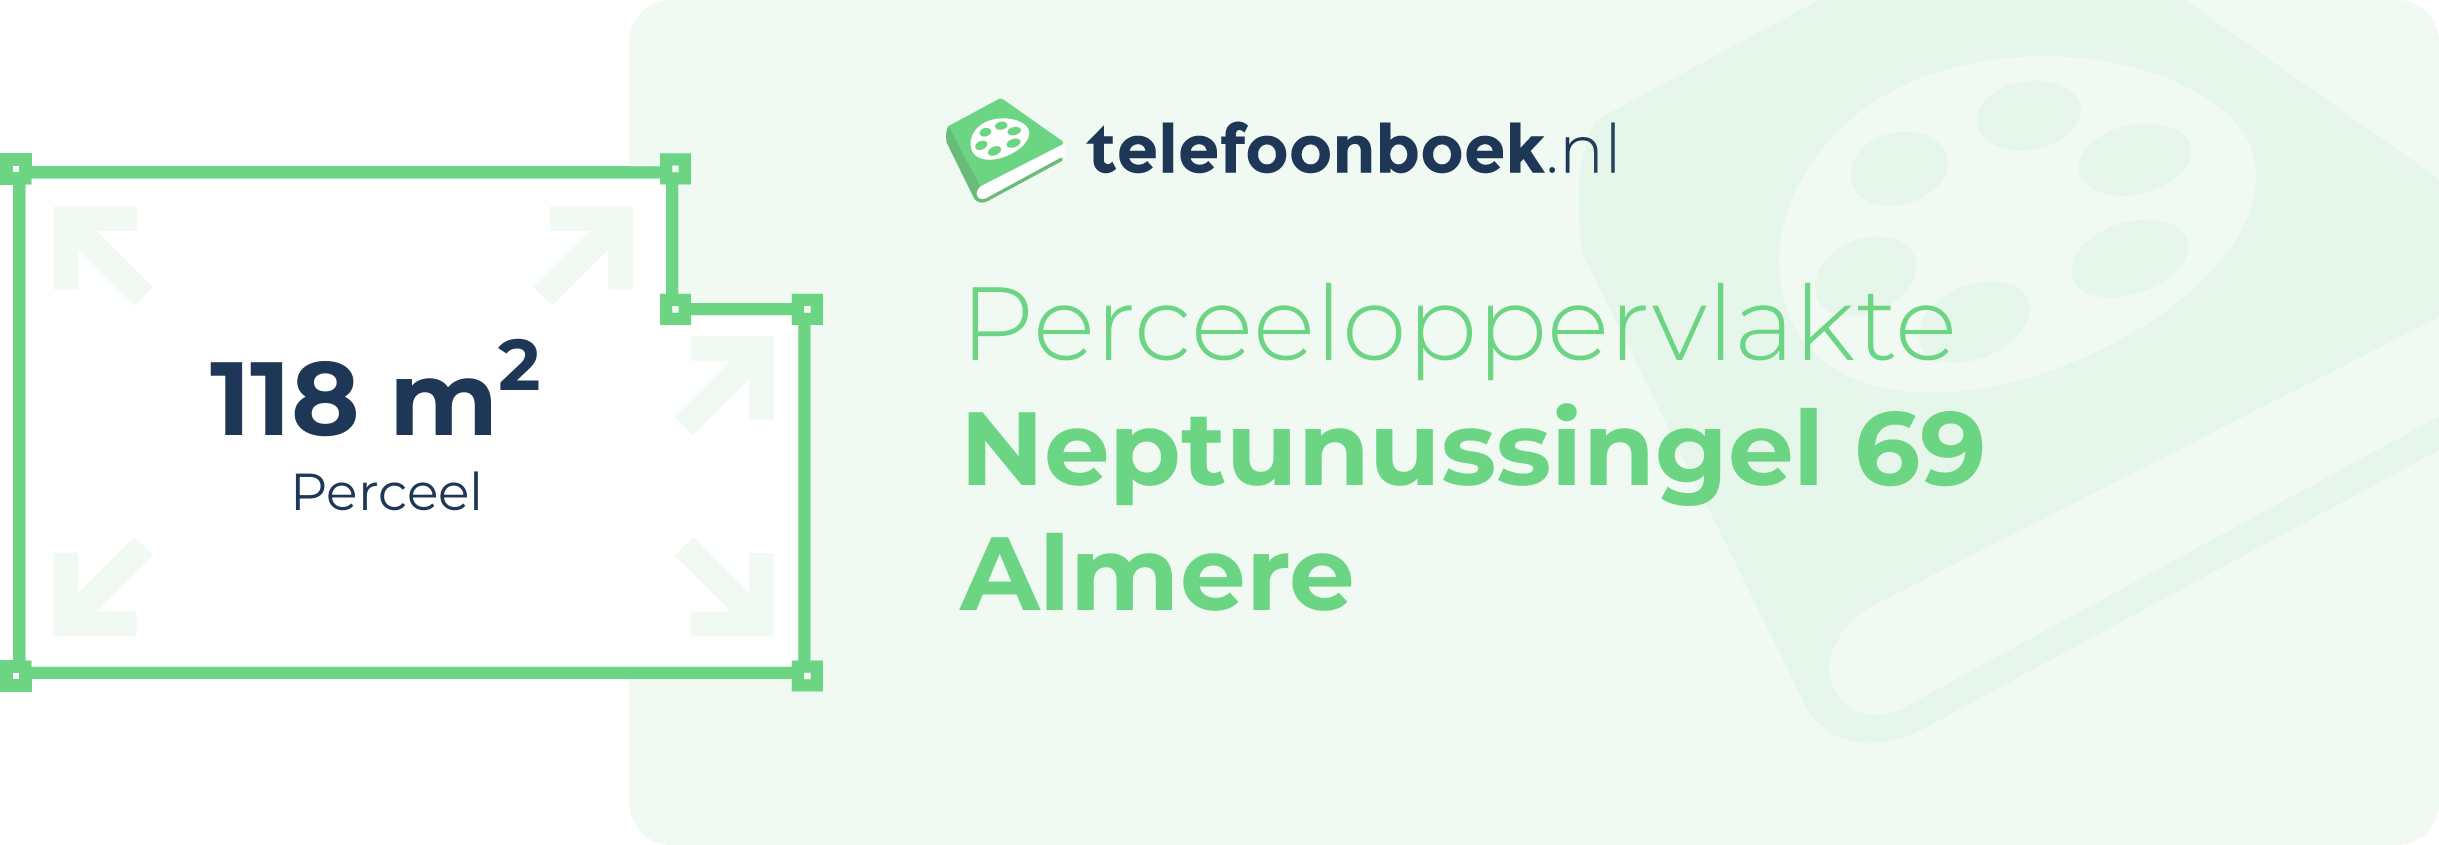 Perceeloppervlakte Neptunussingel 69 Almere